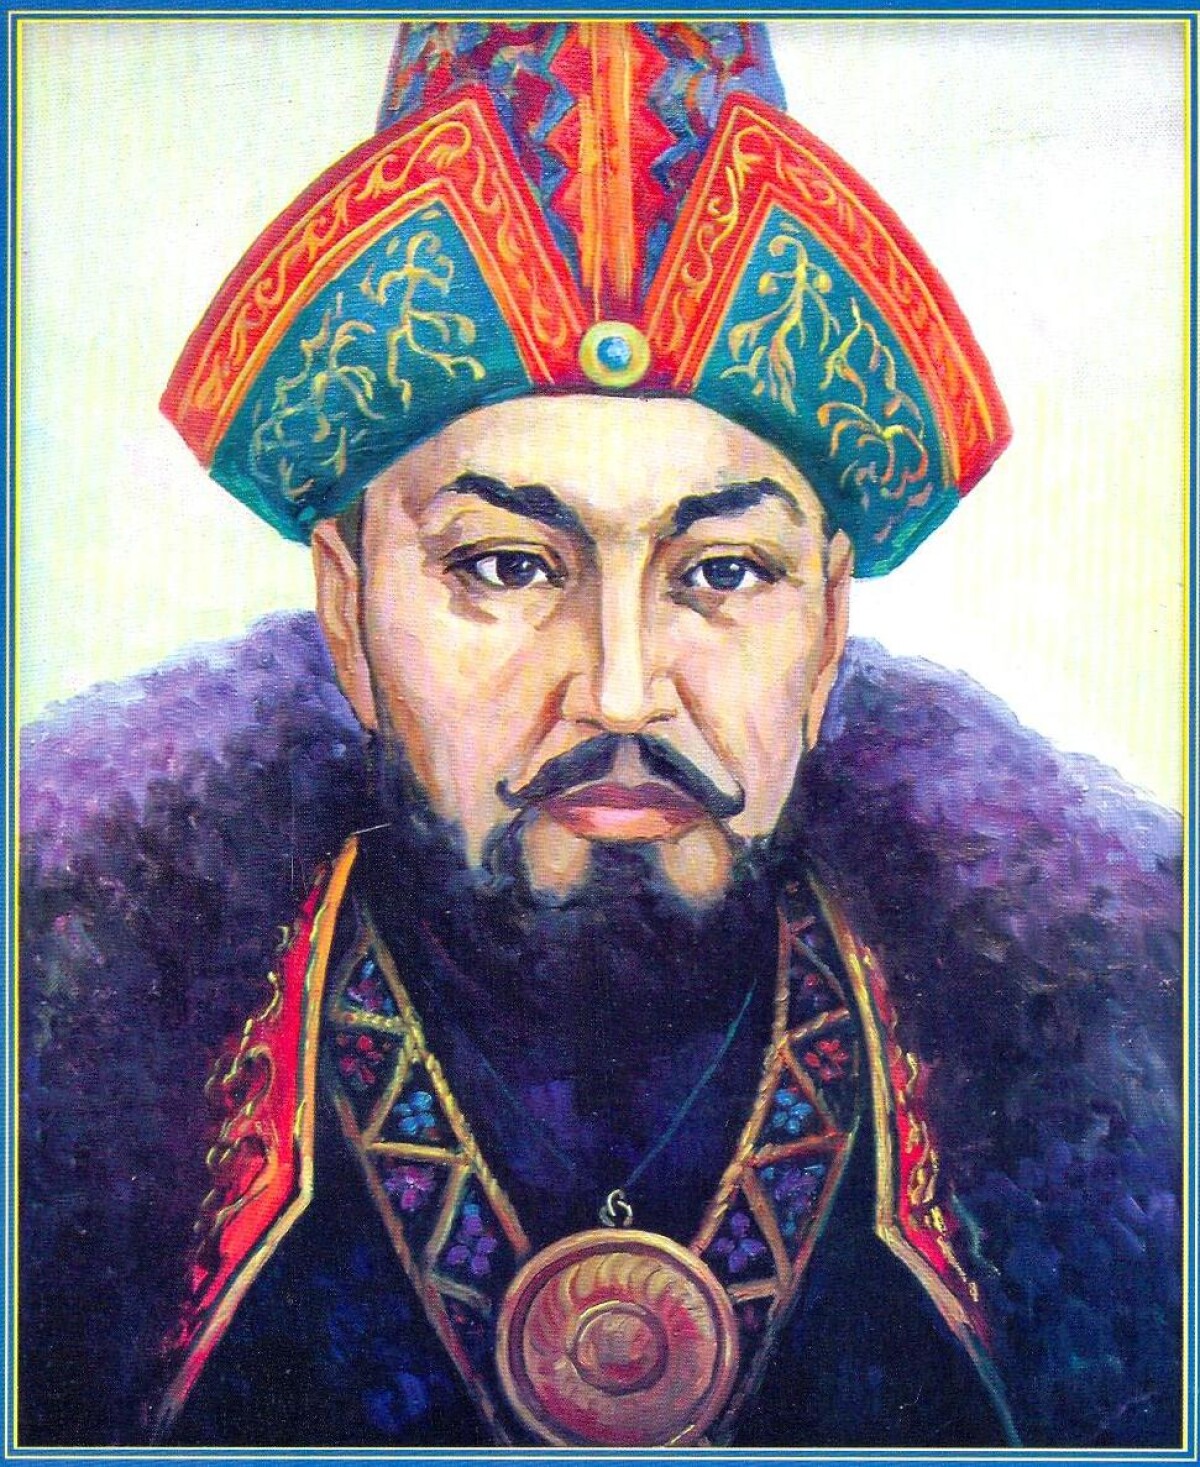 Әбілхайыр хан. Мухаммед Айюб Хан. Портрет Абулхаир хана. Касым-Хан казахский правитель.